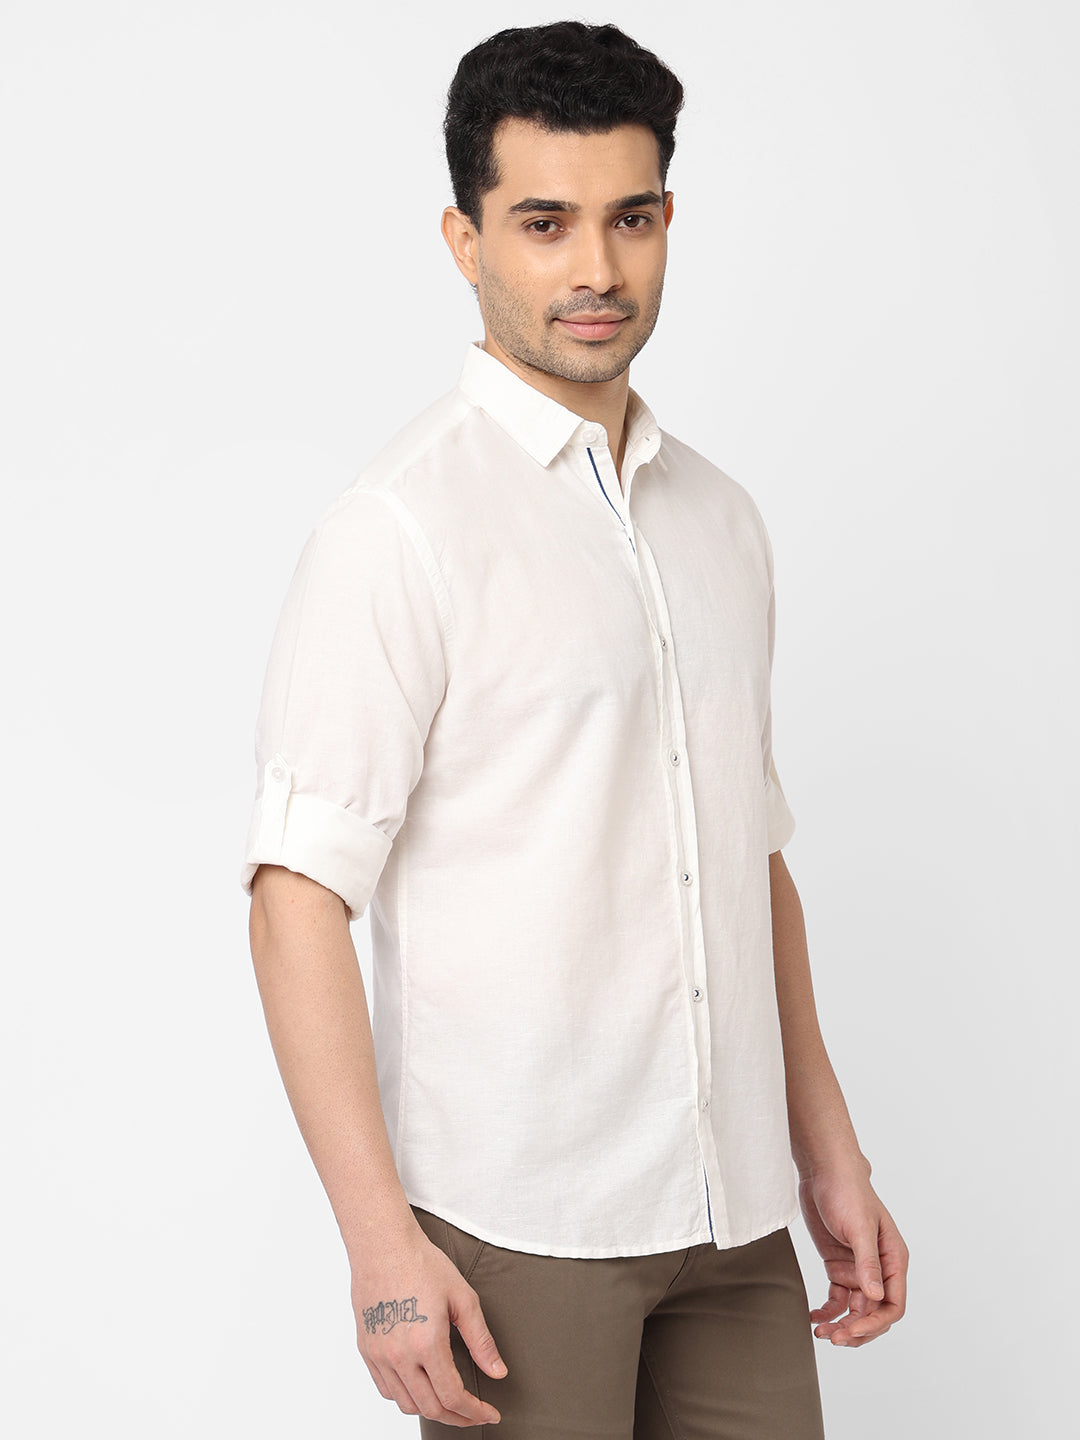 Men's Linen Cotton White Slim Fit Shirt